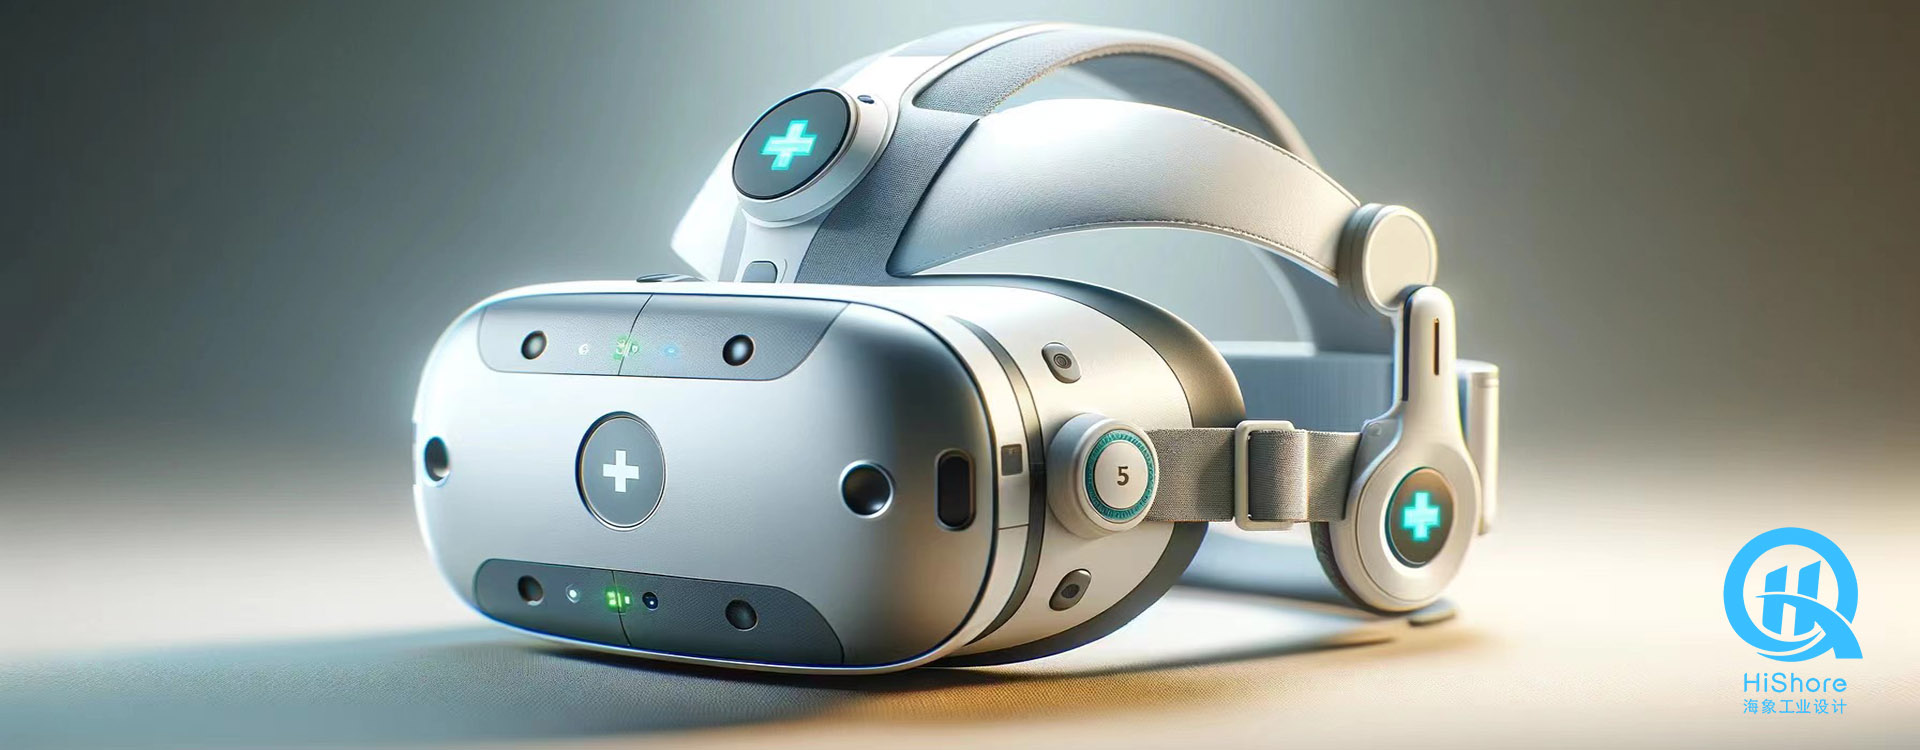 海象VR康复训练仪设计